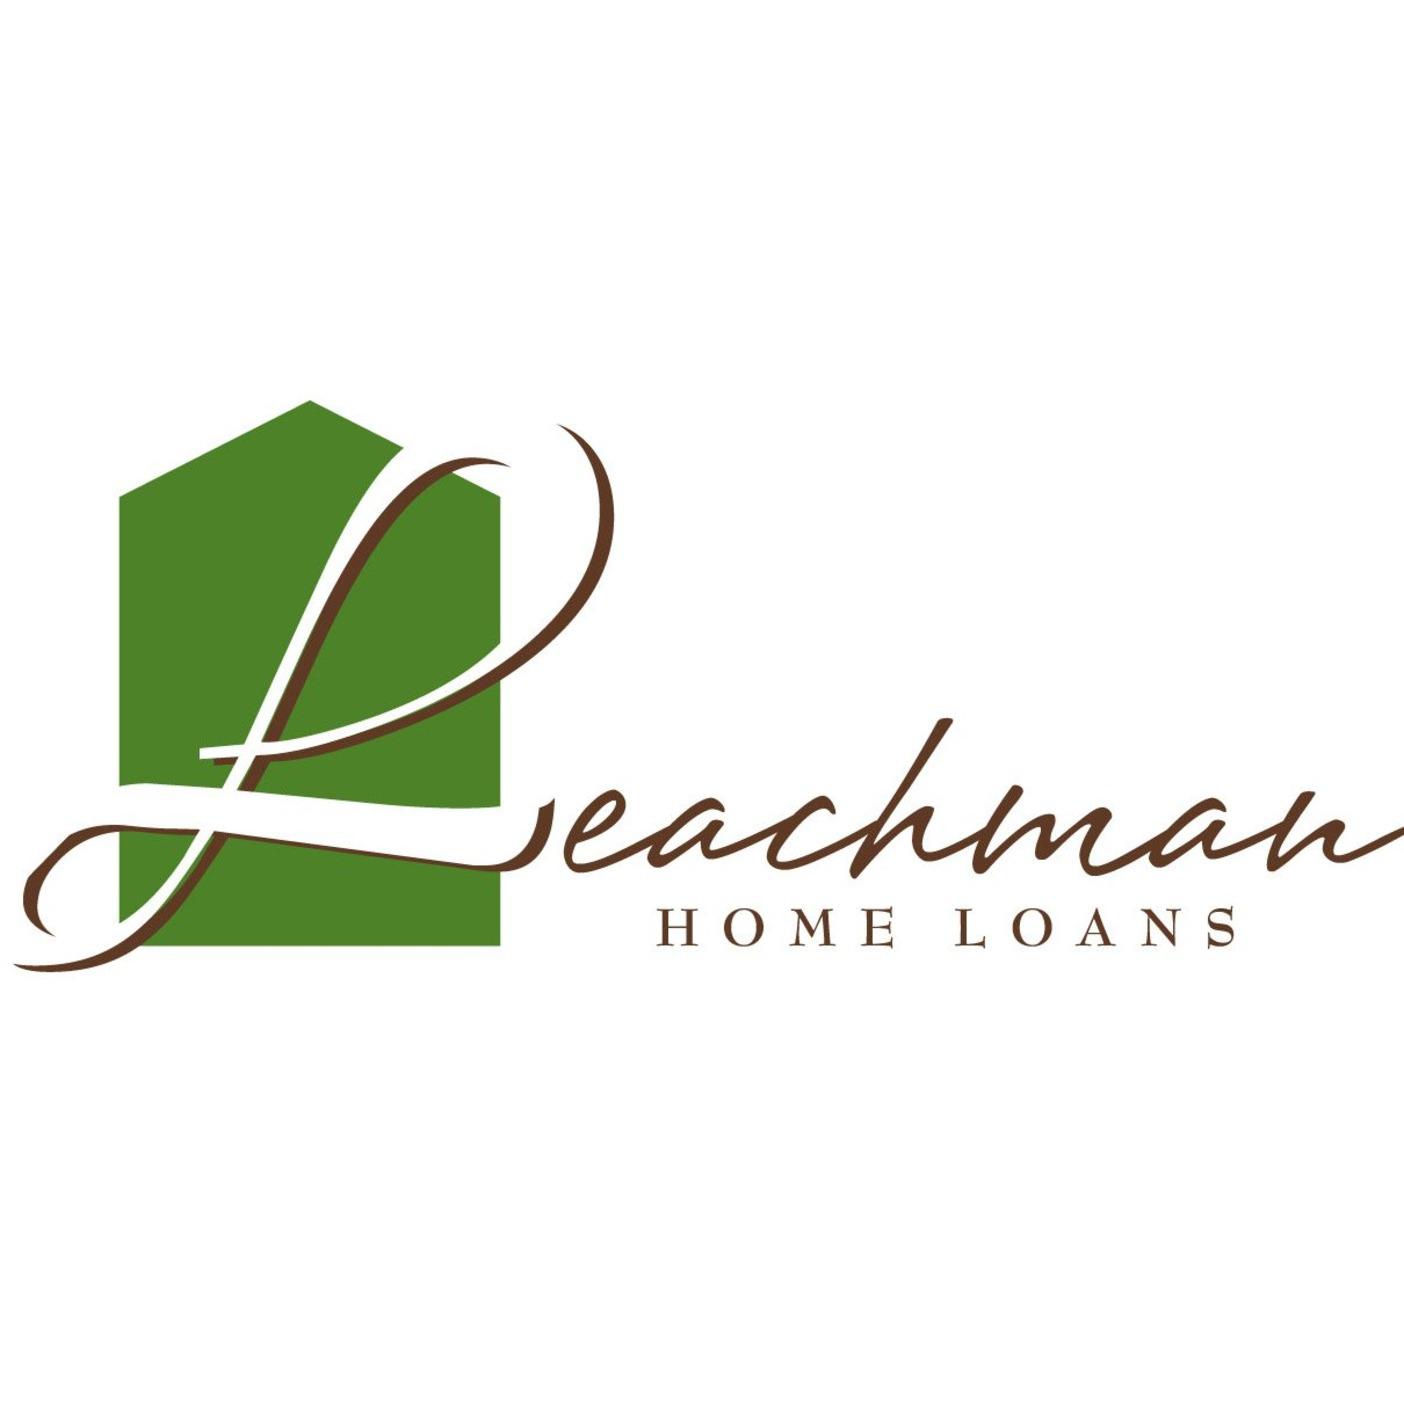 Nancy Leachman & Michelle Leachman | Leachman Home Loans - Grover Beach, CA - (805)735-8687 | ShowMeLocal.com